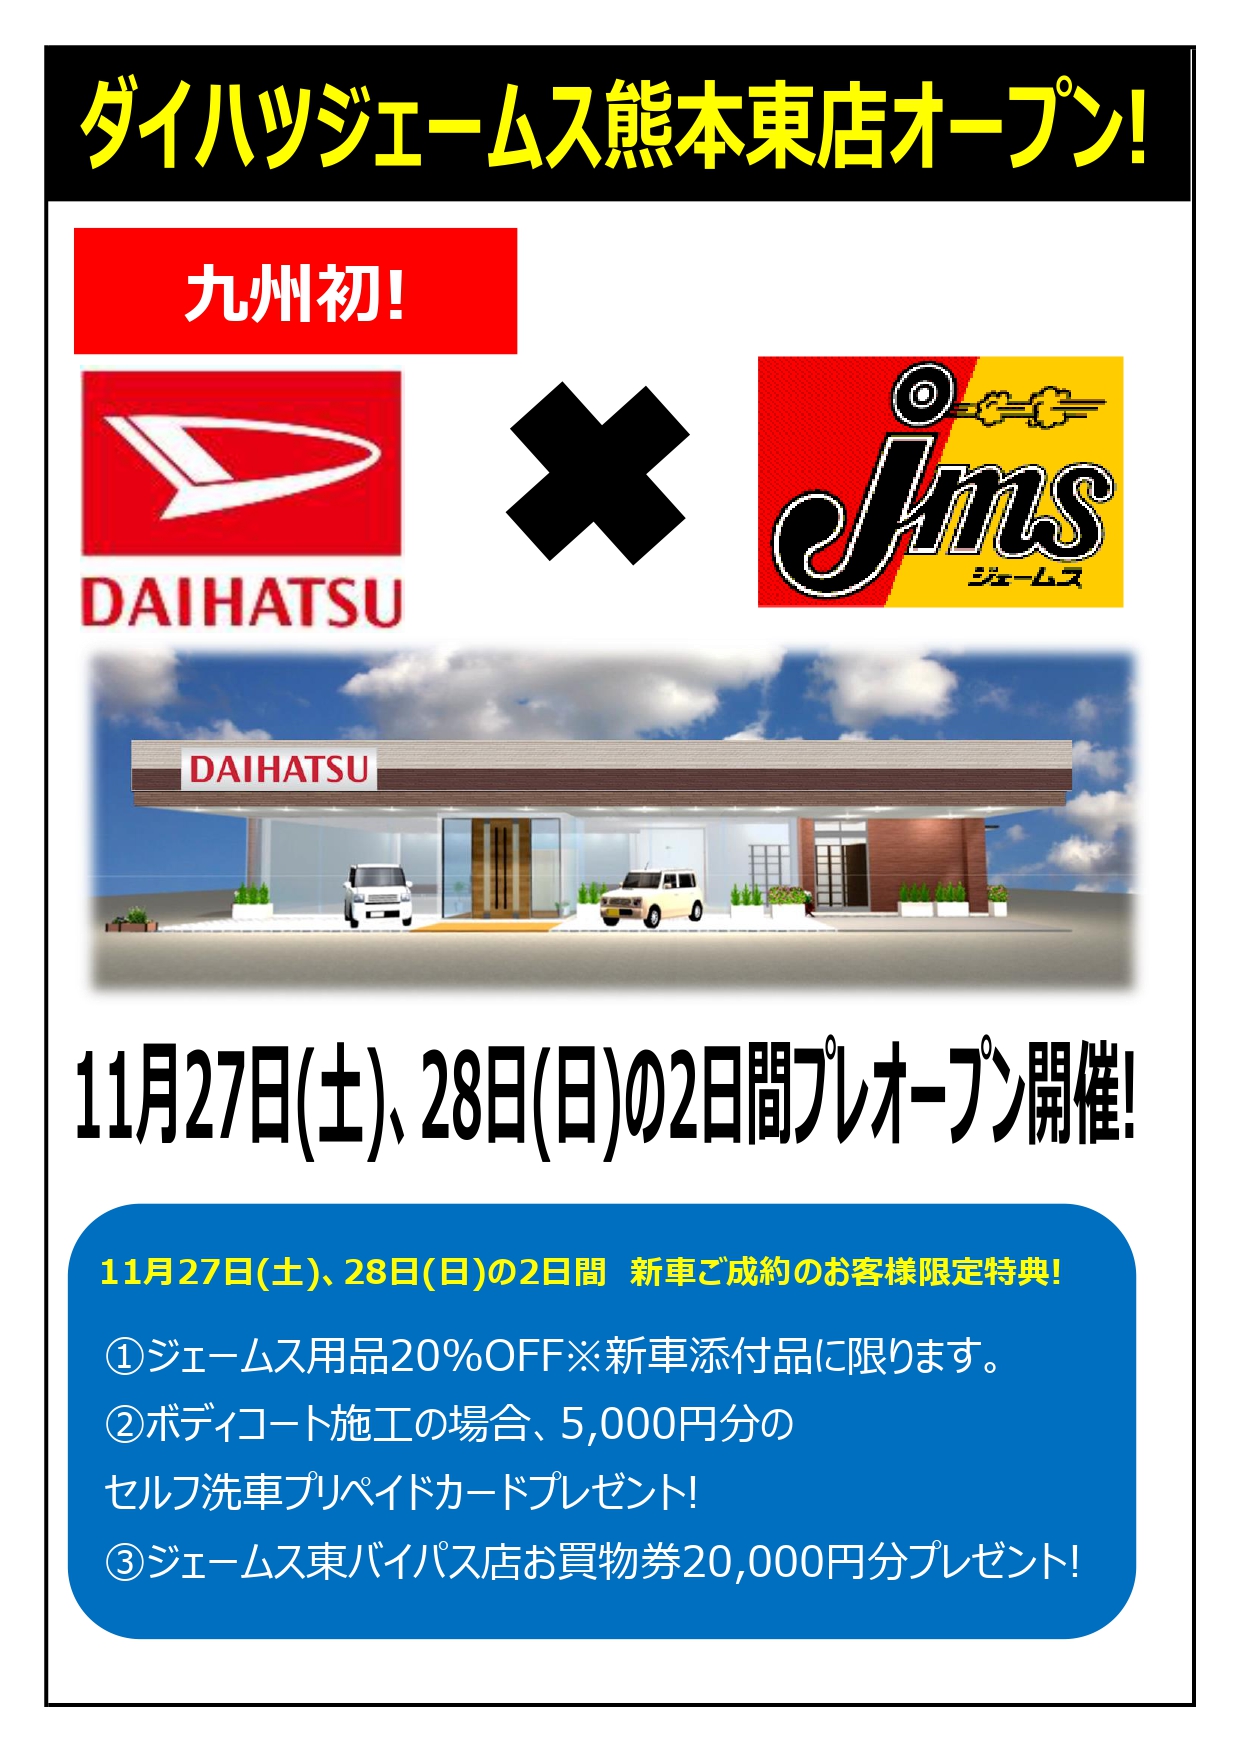 ダイハツジェームス熊本東店プレオープン